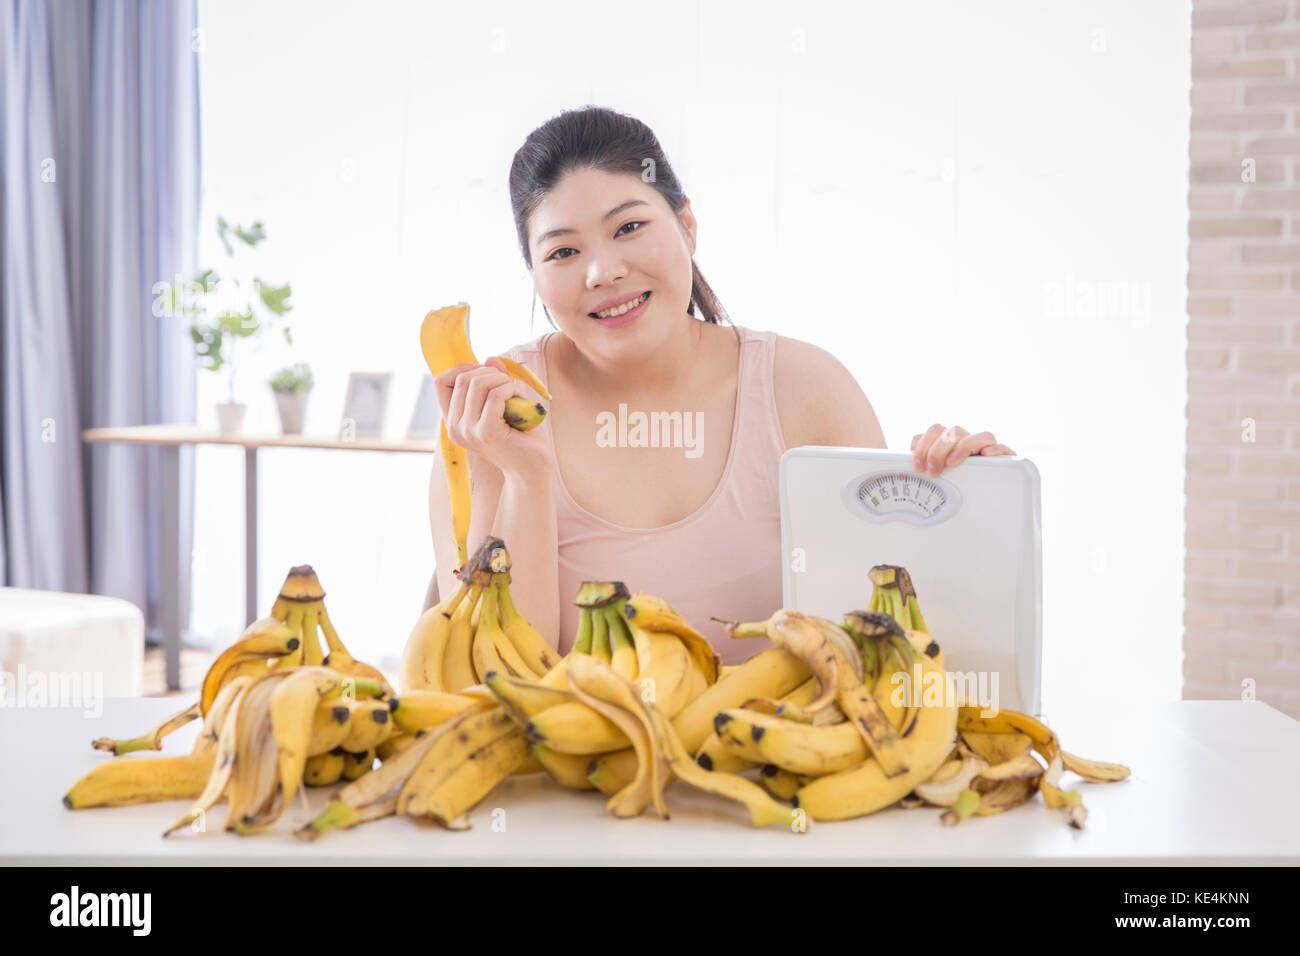 Portrait of young smiling grosse femme avec une échelle et banalité Banque D'Images